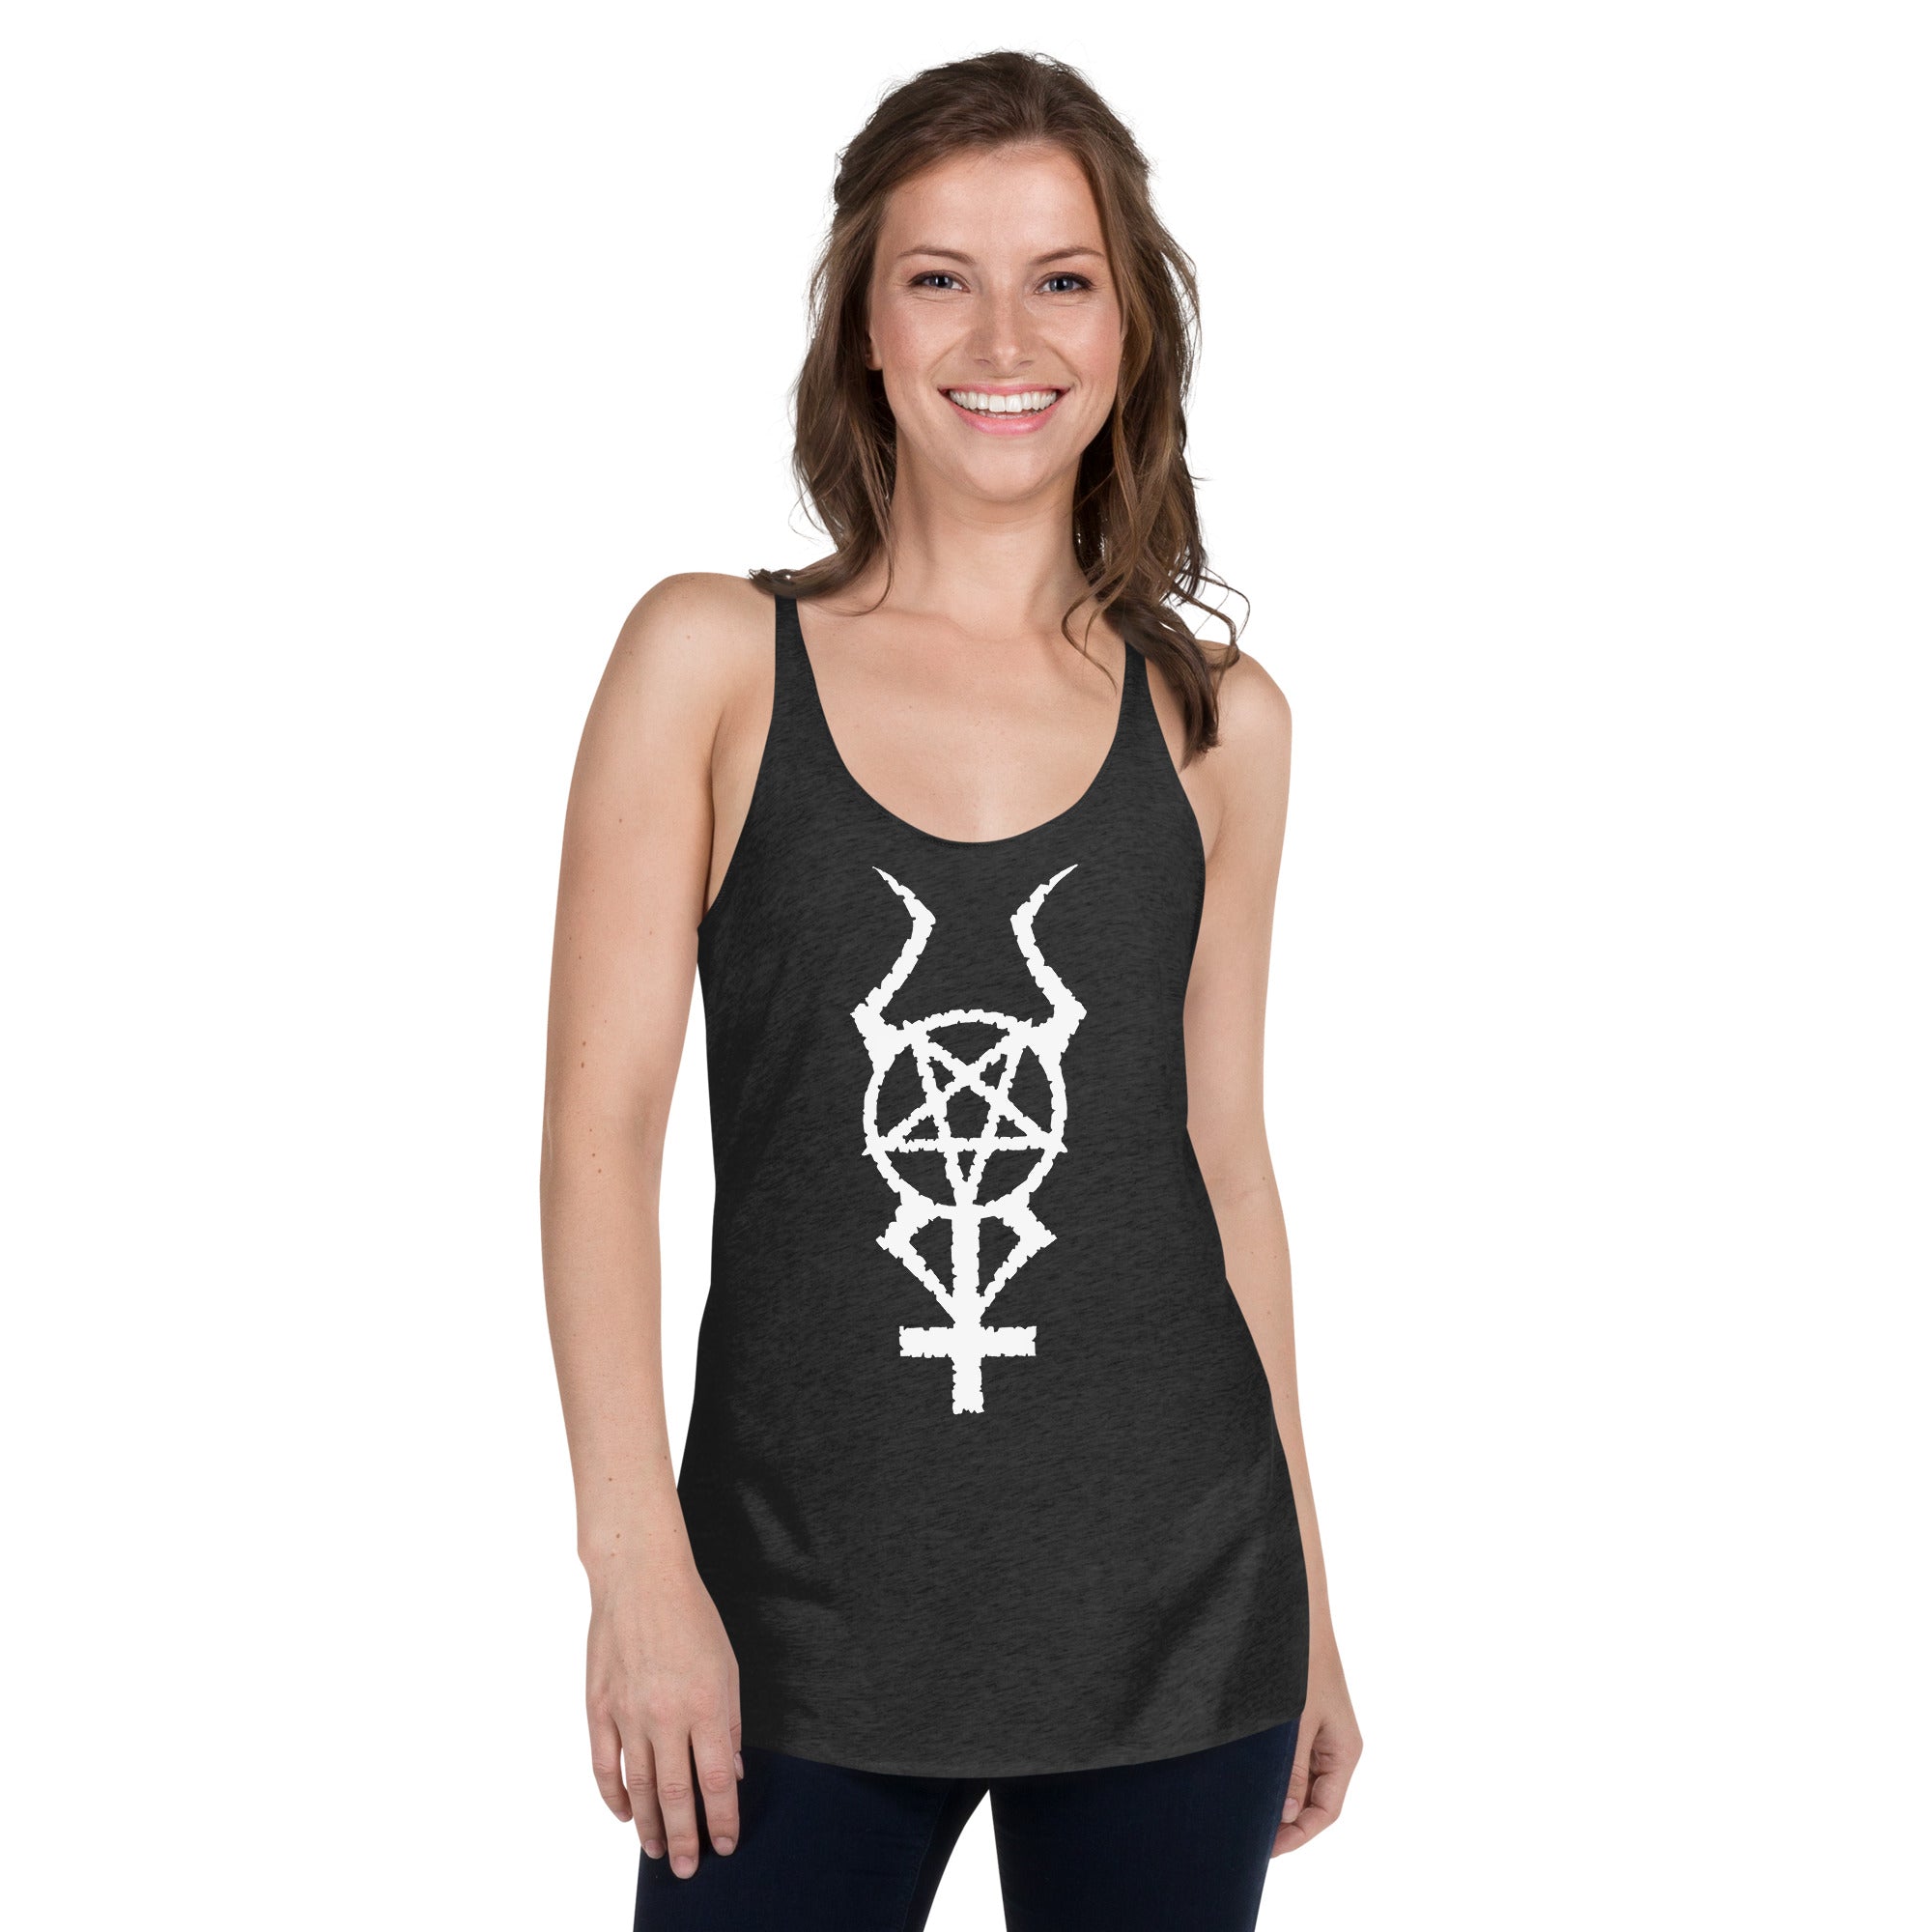 White Horned Pentacross Ritual Pentagram Cross Women's Racerback Tank Top Shirt - Edge of Life Designs